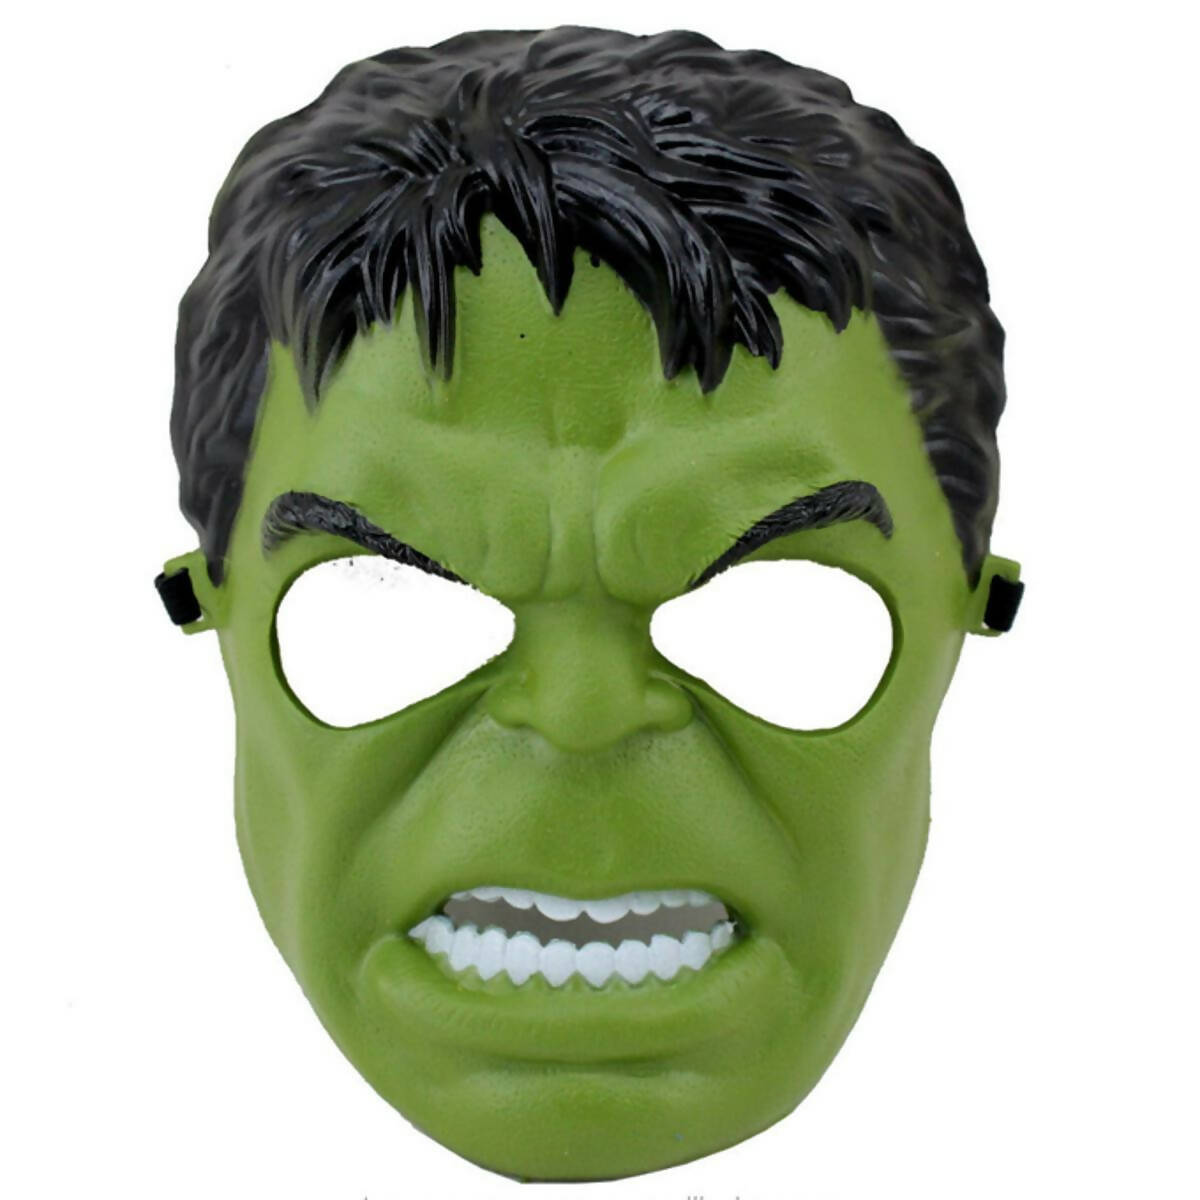 Incredible Hulk Mask - Plastic